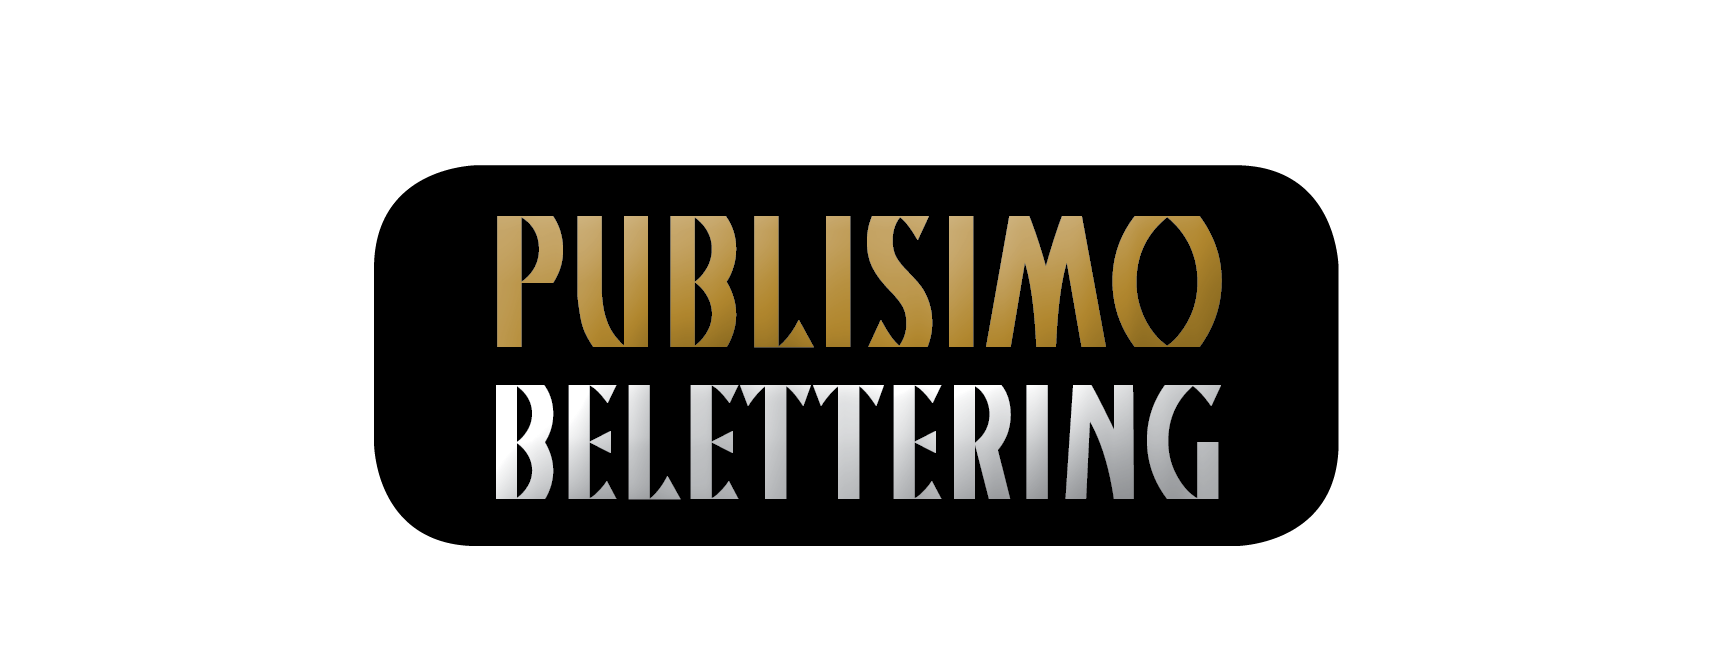 logo belettering